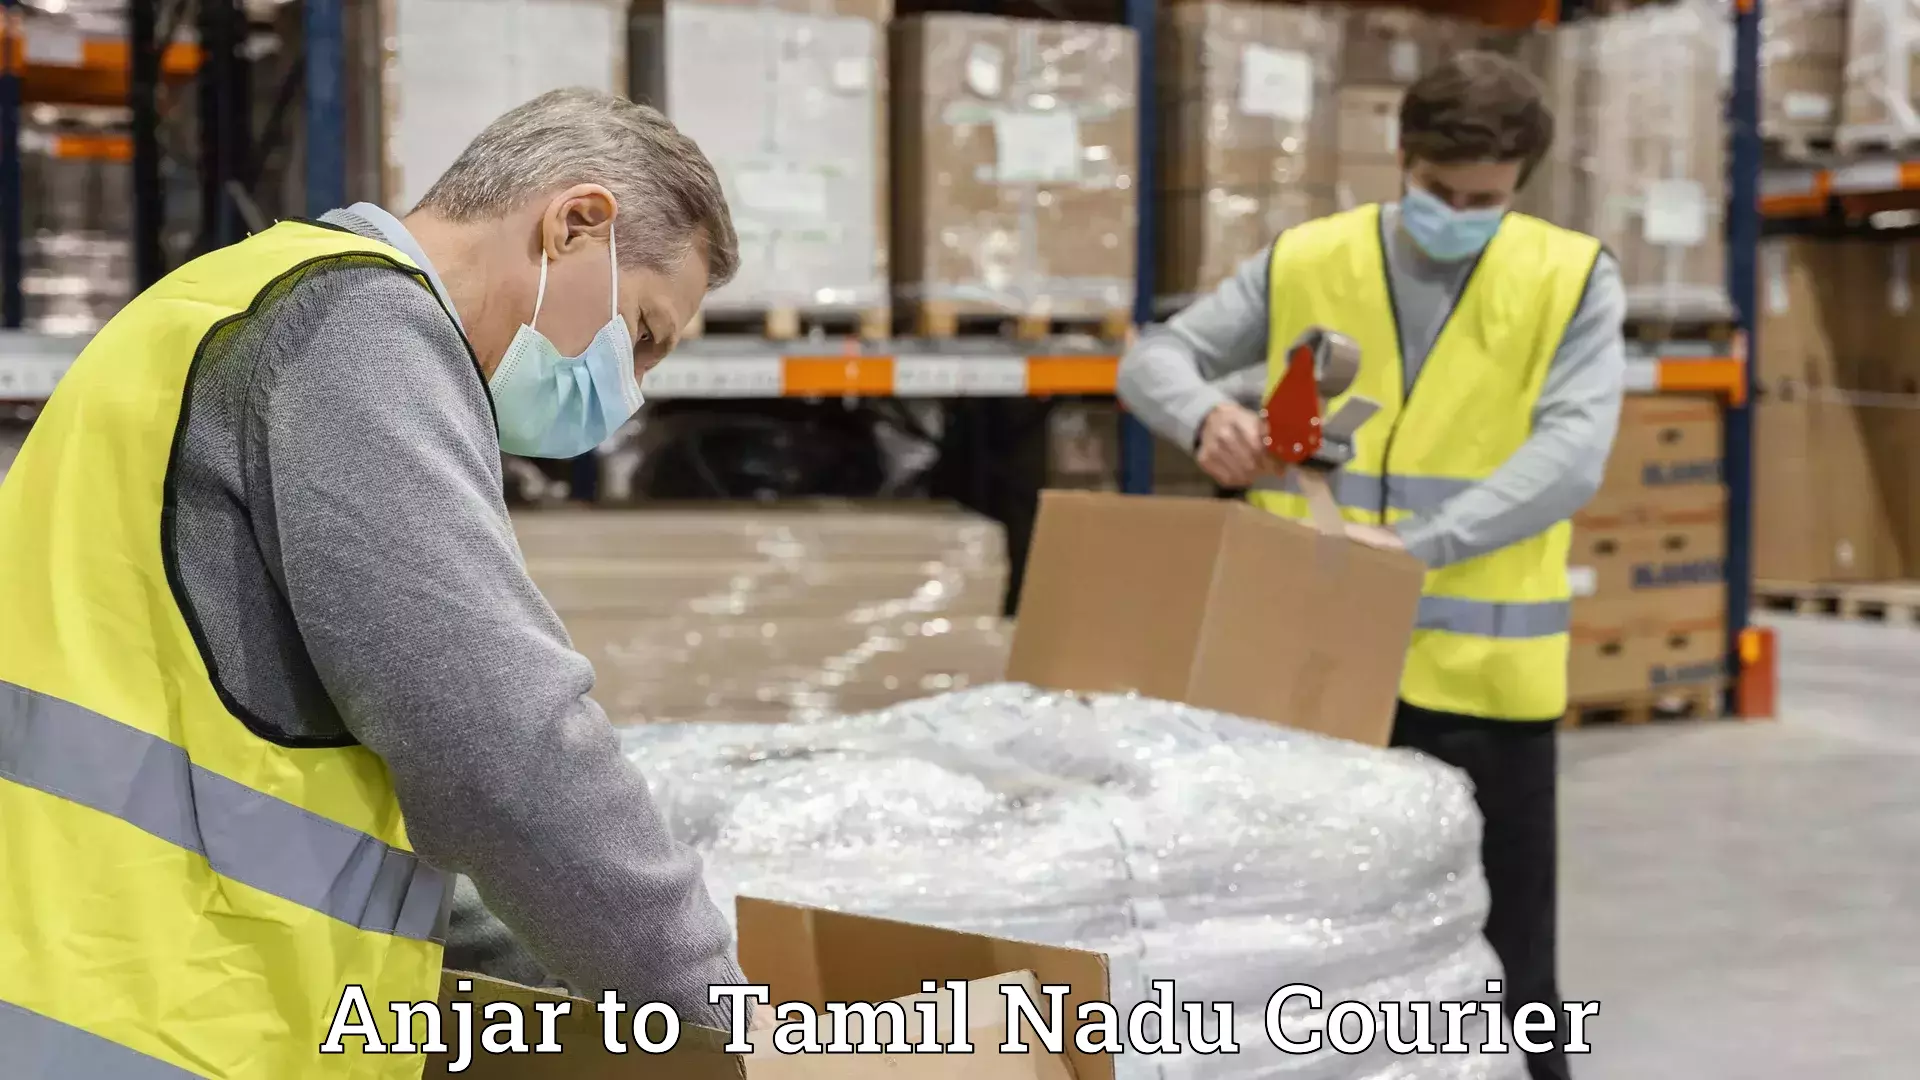 Professional moving strategies Anjar to Tamil Nadu